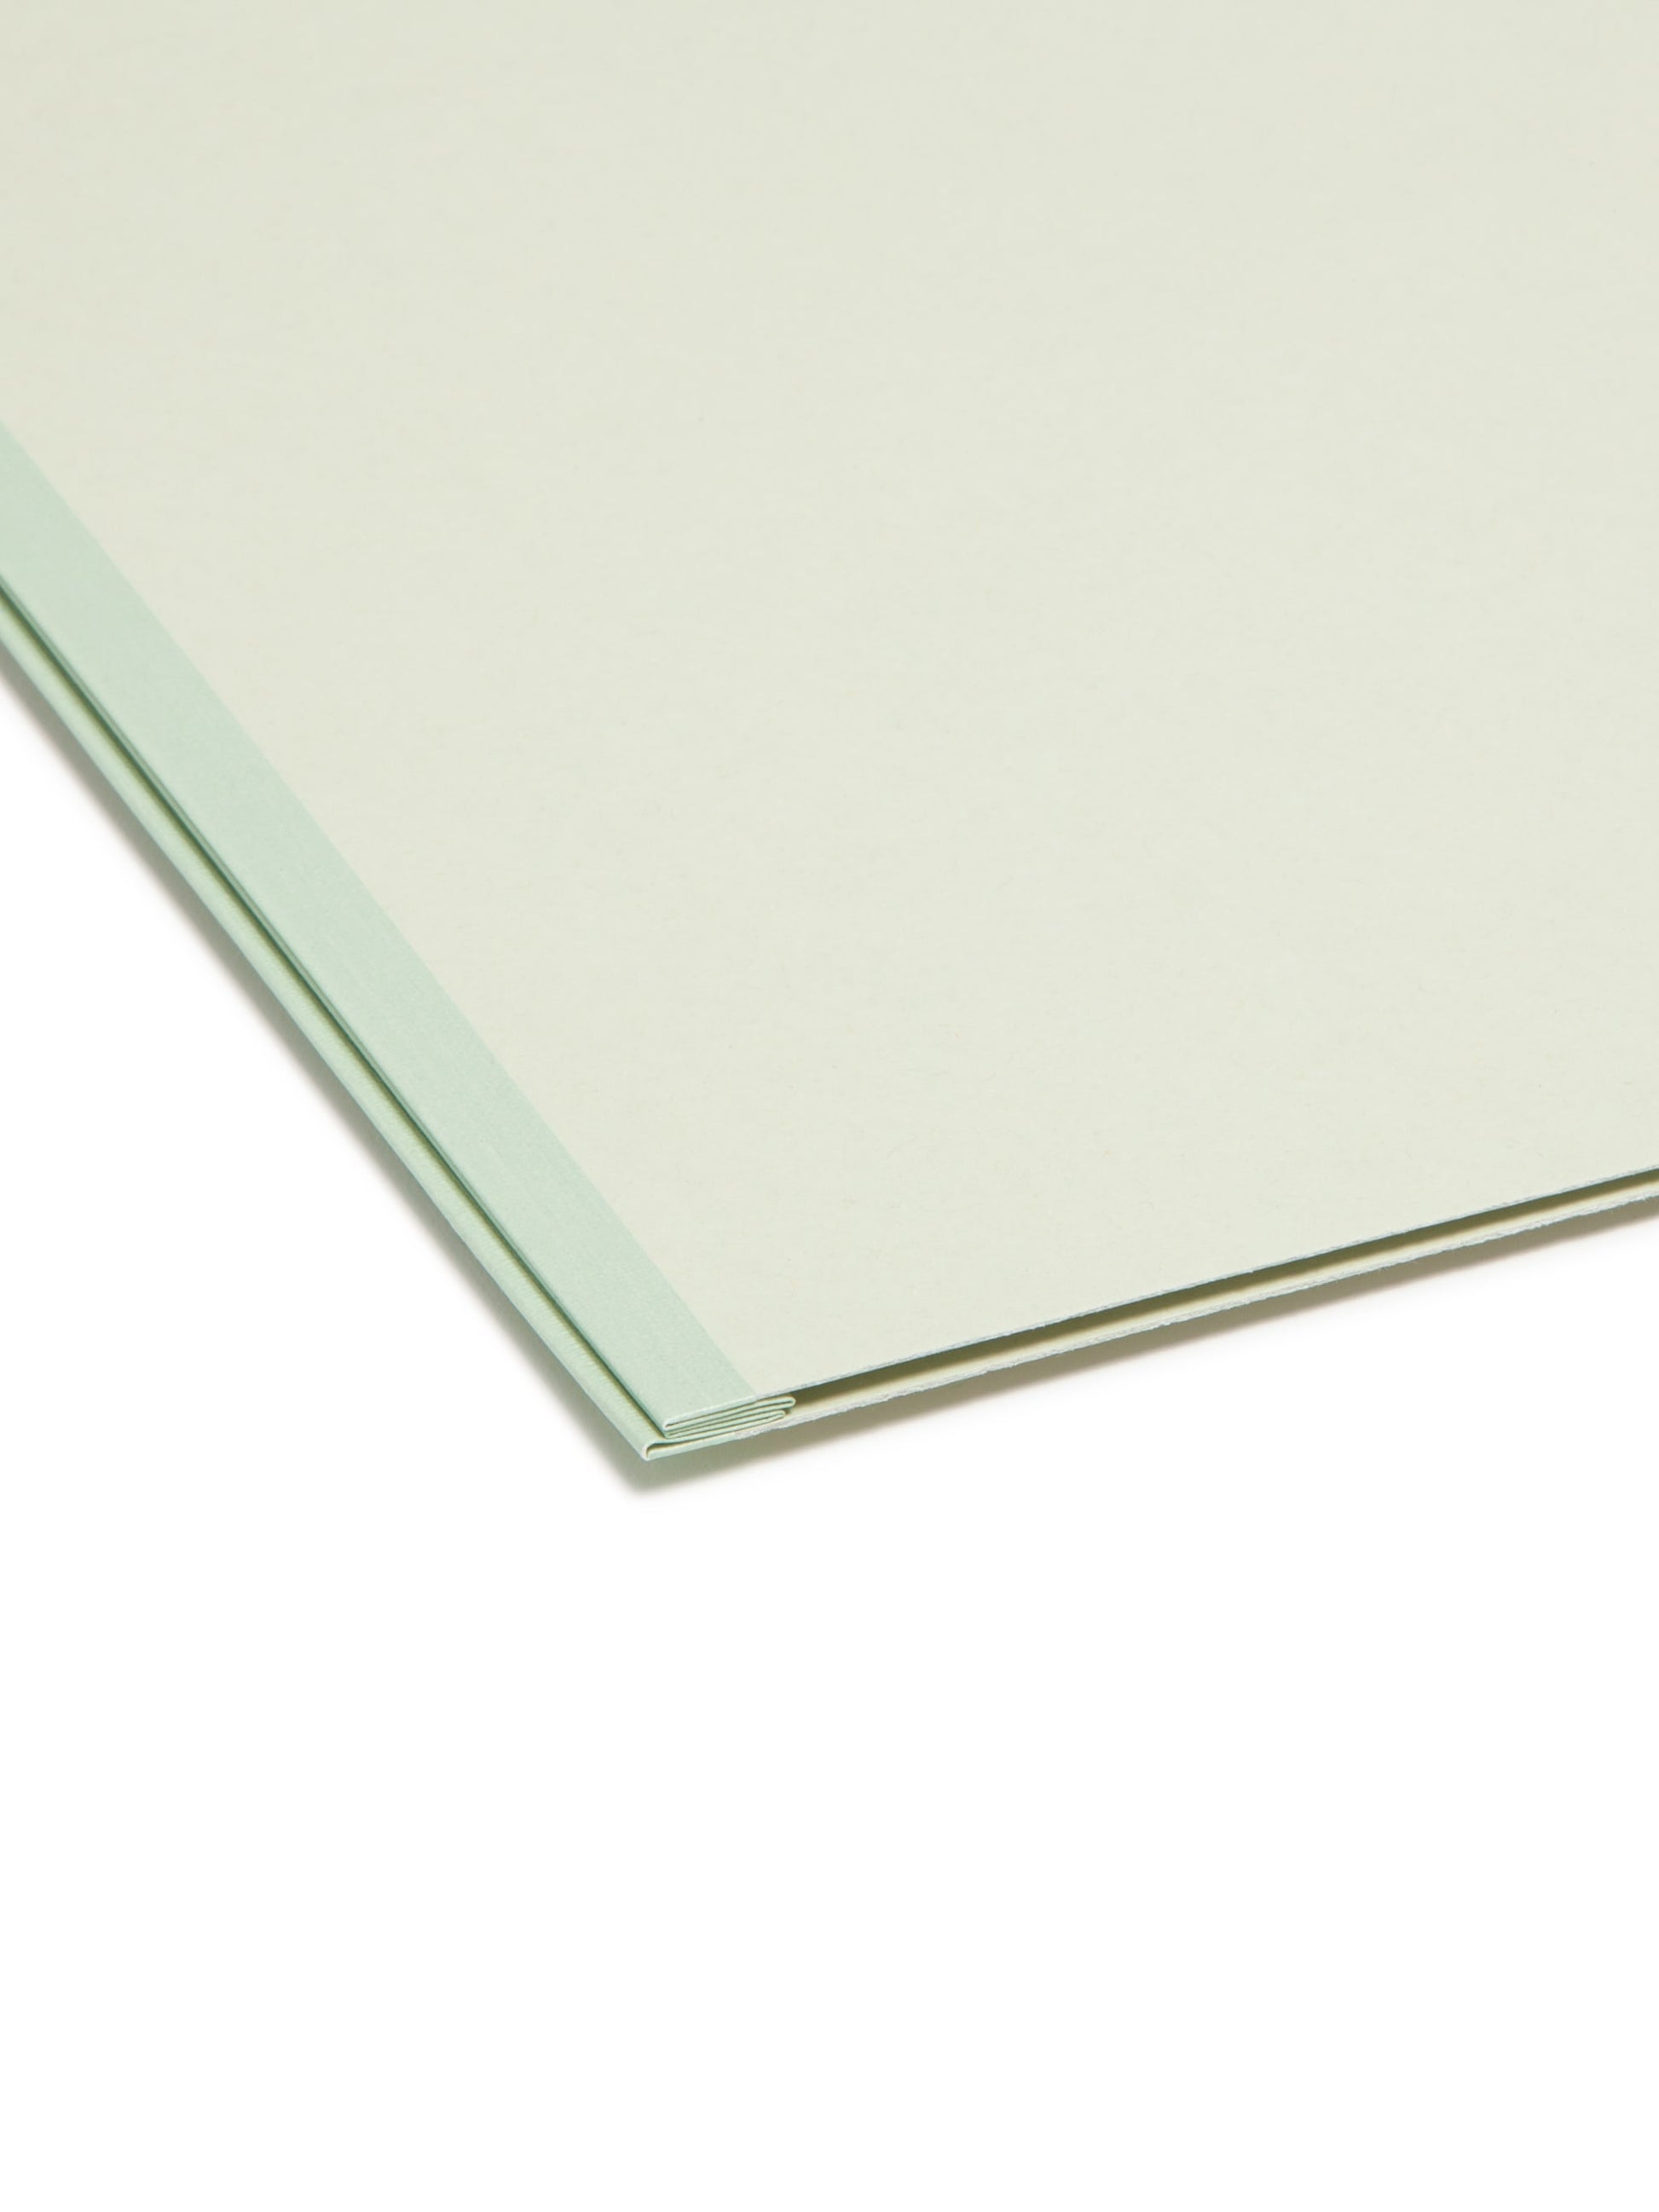 SuperTab® Pressboard Fastener File Folders, Gray/Green Color, Legal Size, Set of 25, 086486199810